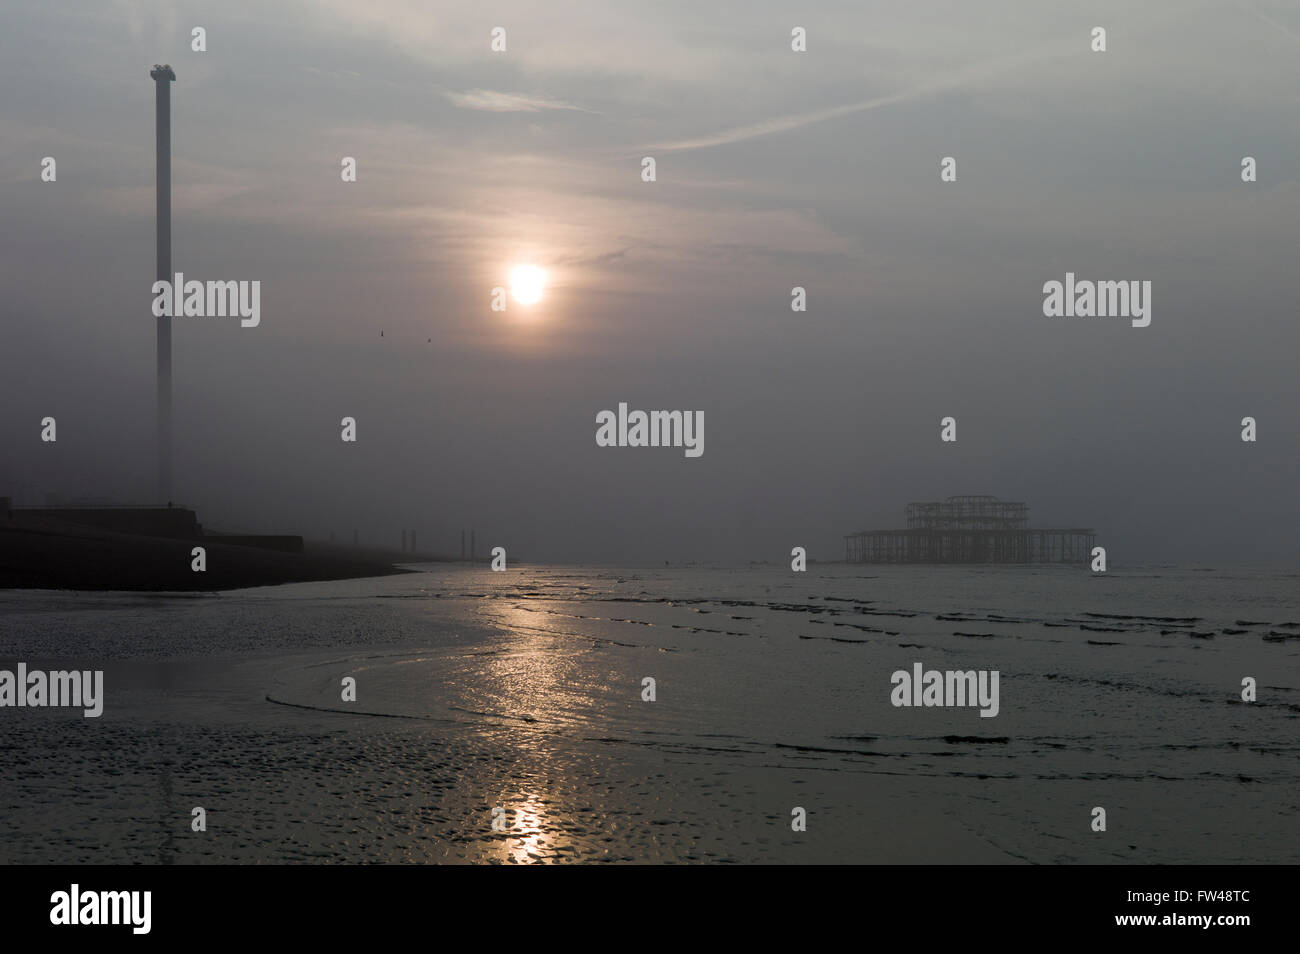 Sonnenaufgang am nebligen Morgen, Brighton Strandpromenade, mit verlassenen Pier West und i360 Aussichtsturm Stockfoto